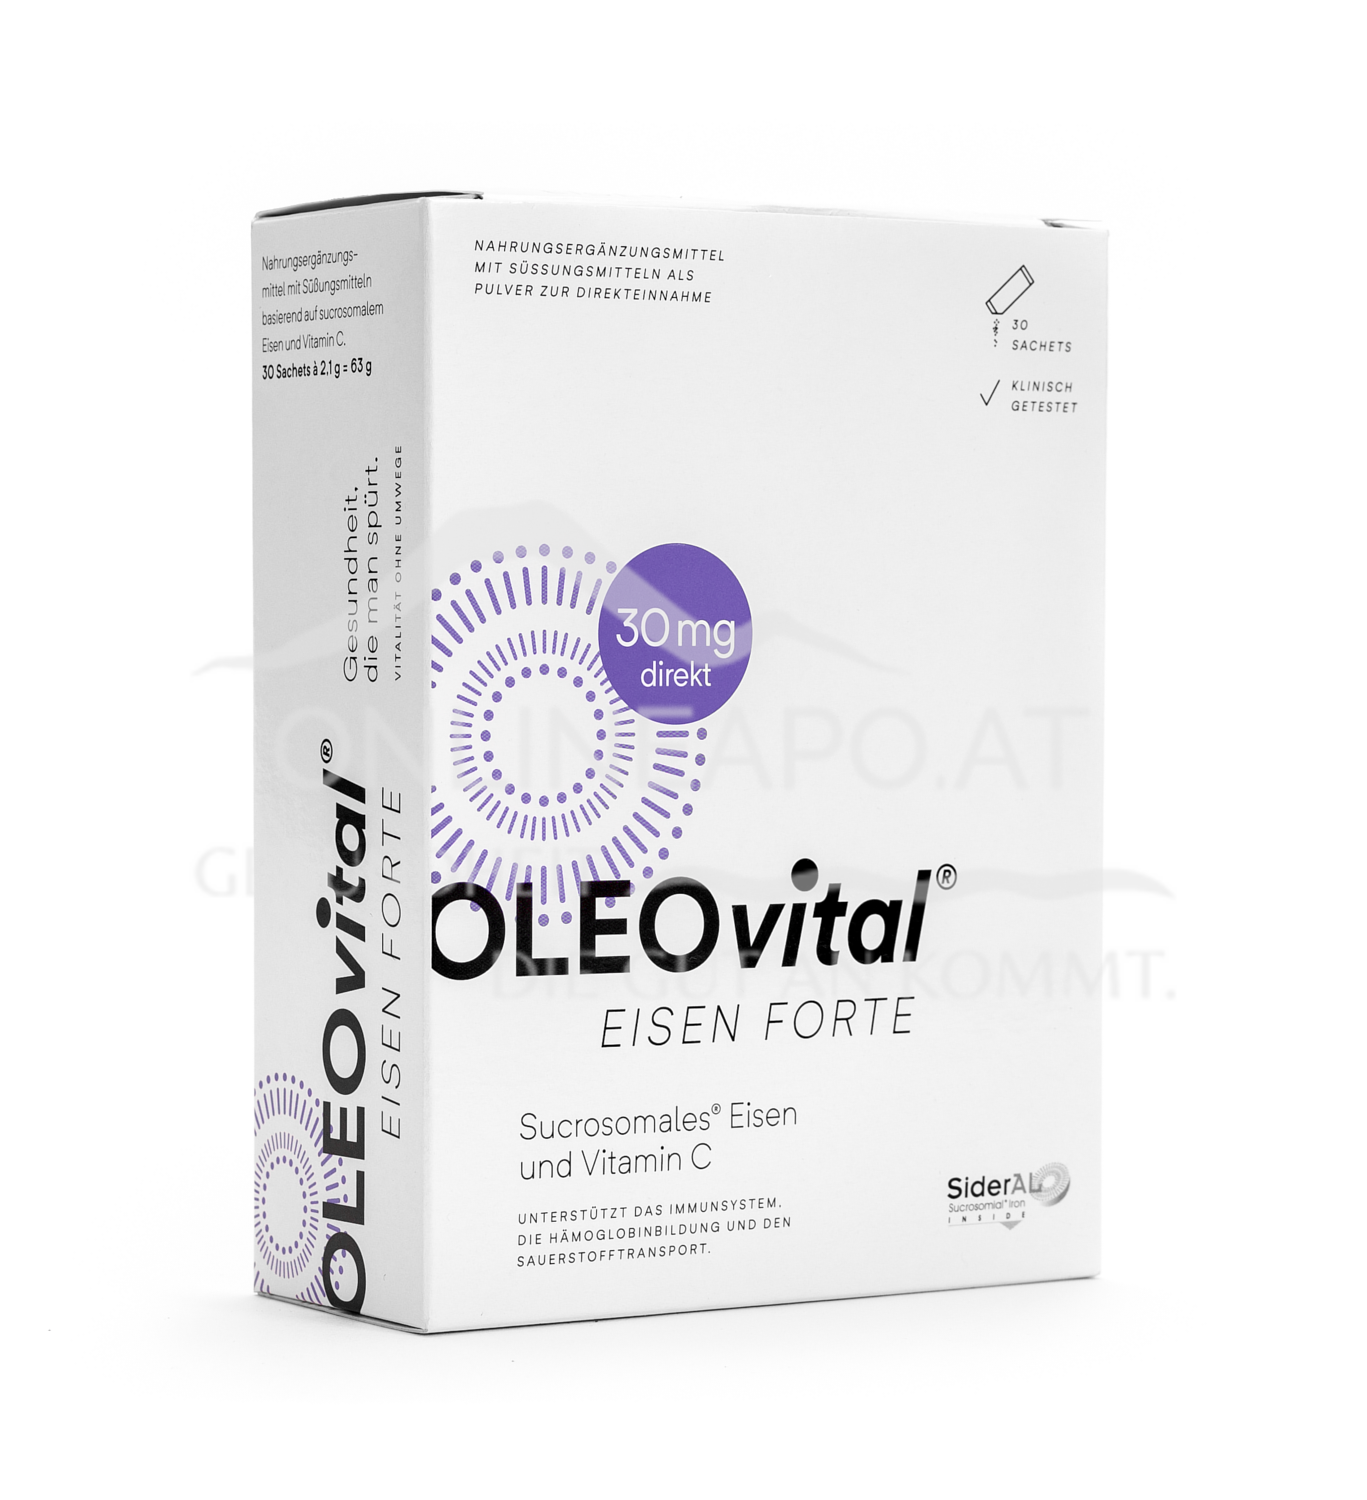 OLEOvital® EISEN FORTE  (30 mg Eisen) Sachets